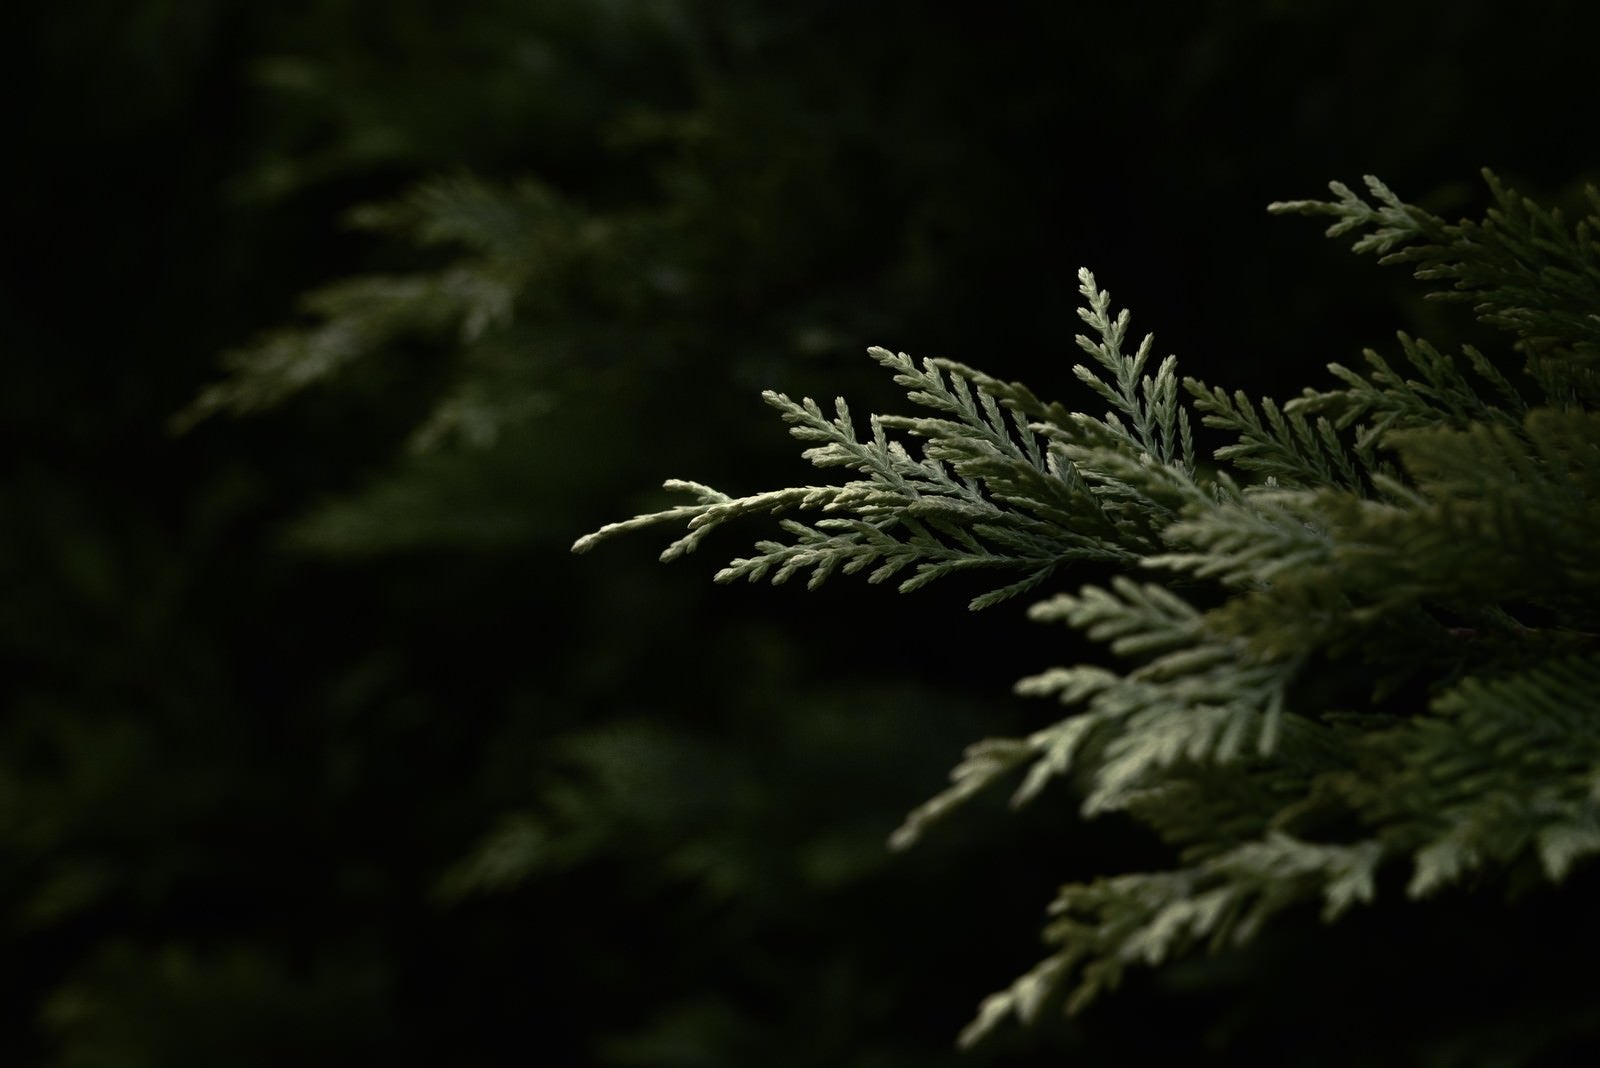 「暗がりに浮かび上がる杉の幼木」の写真